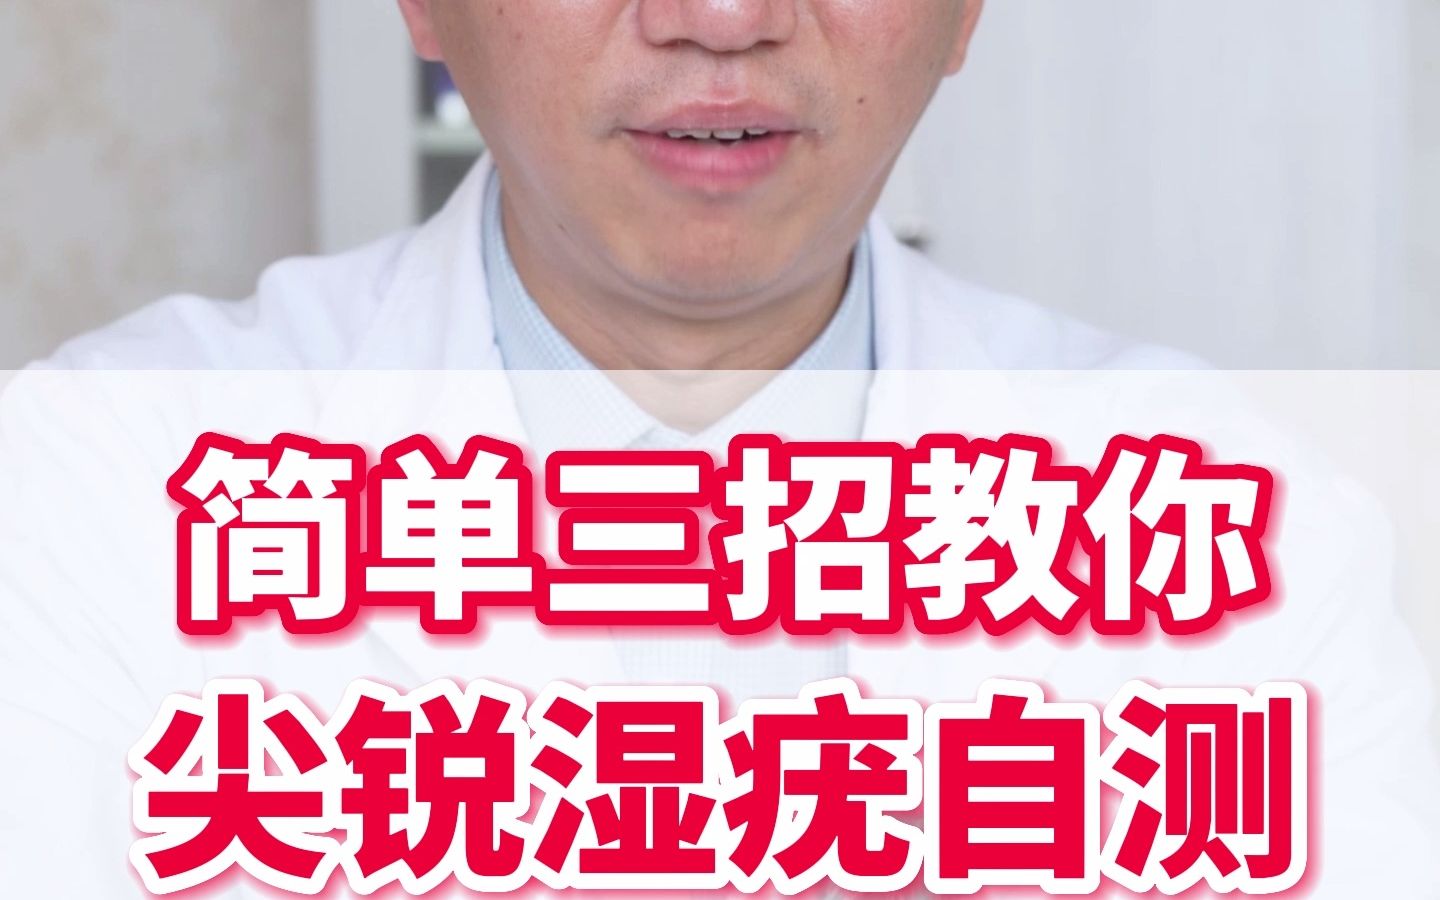 尖锐湿疣初期症状_陈雪医生视频讲解皮肤科疾病-快速问医生